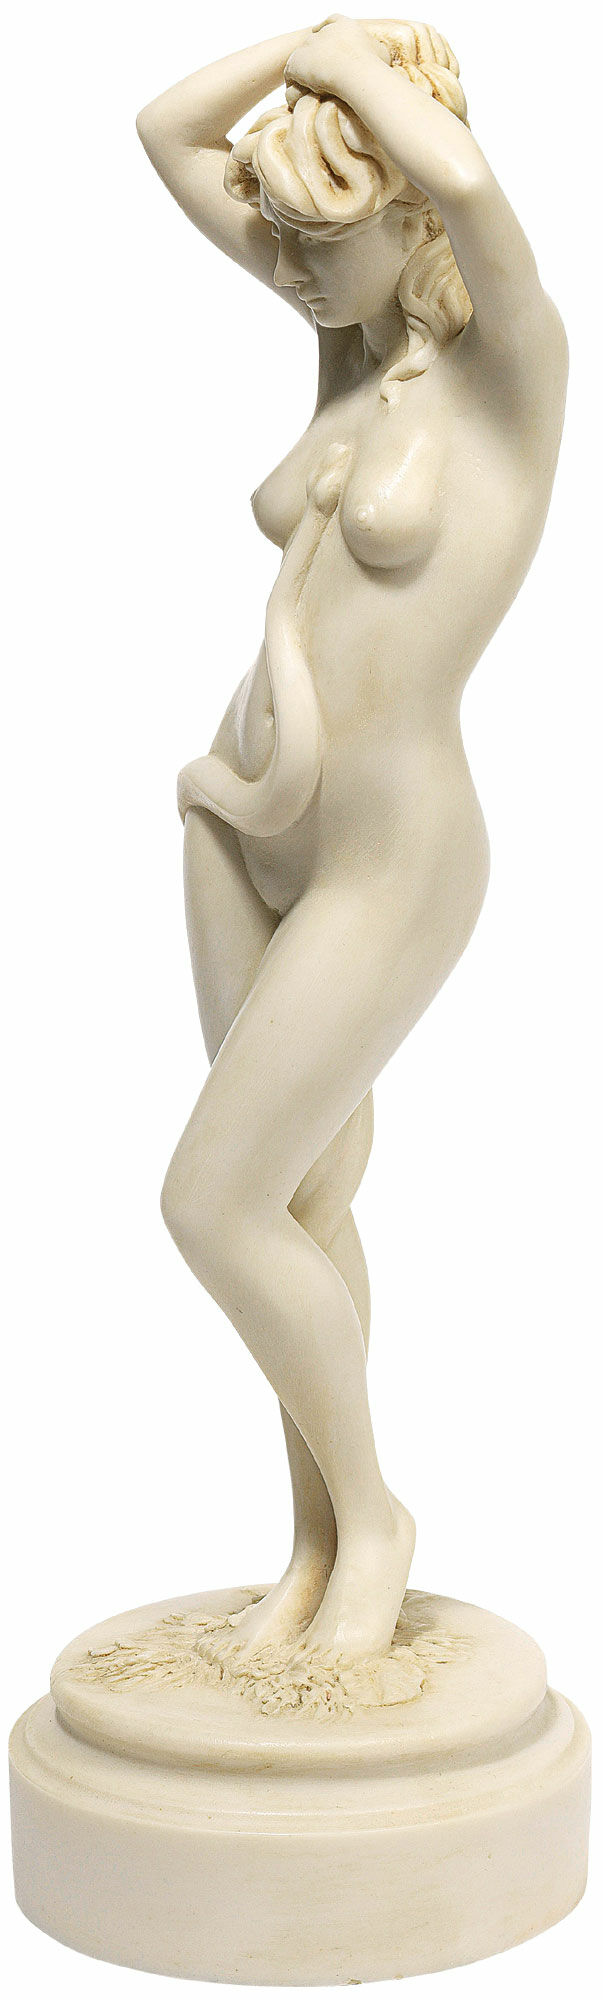 Skulptur "Eva", version i konstgjord marmor von Thomas Schöne